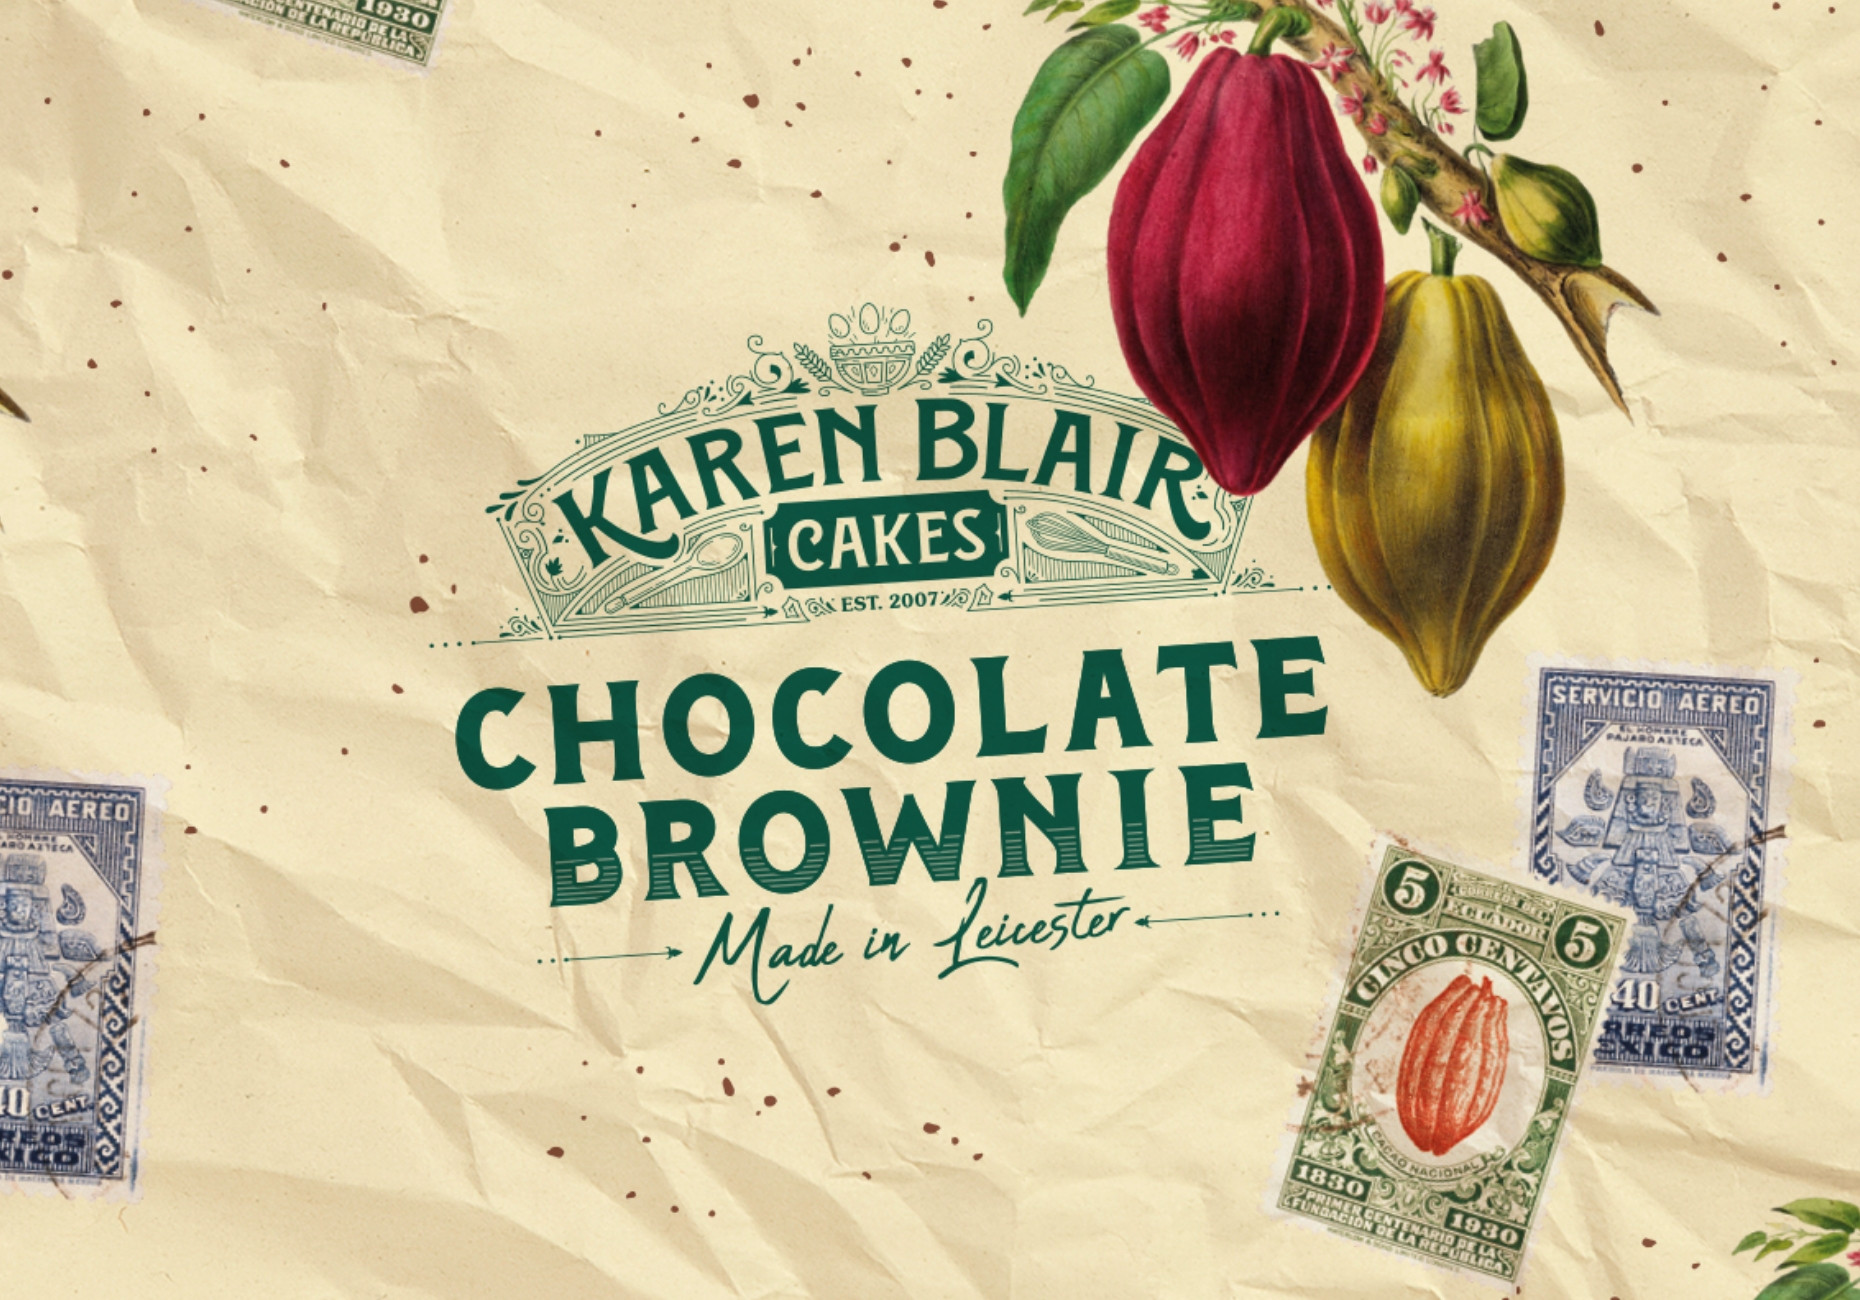 Karen Blair Cakes brownie wrap greaseproof paper design by Root Studio